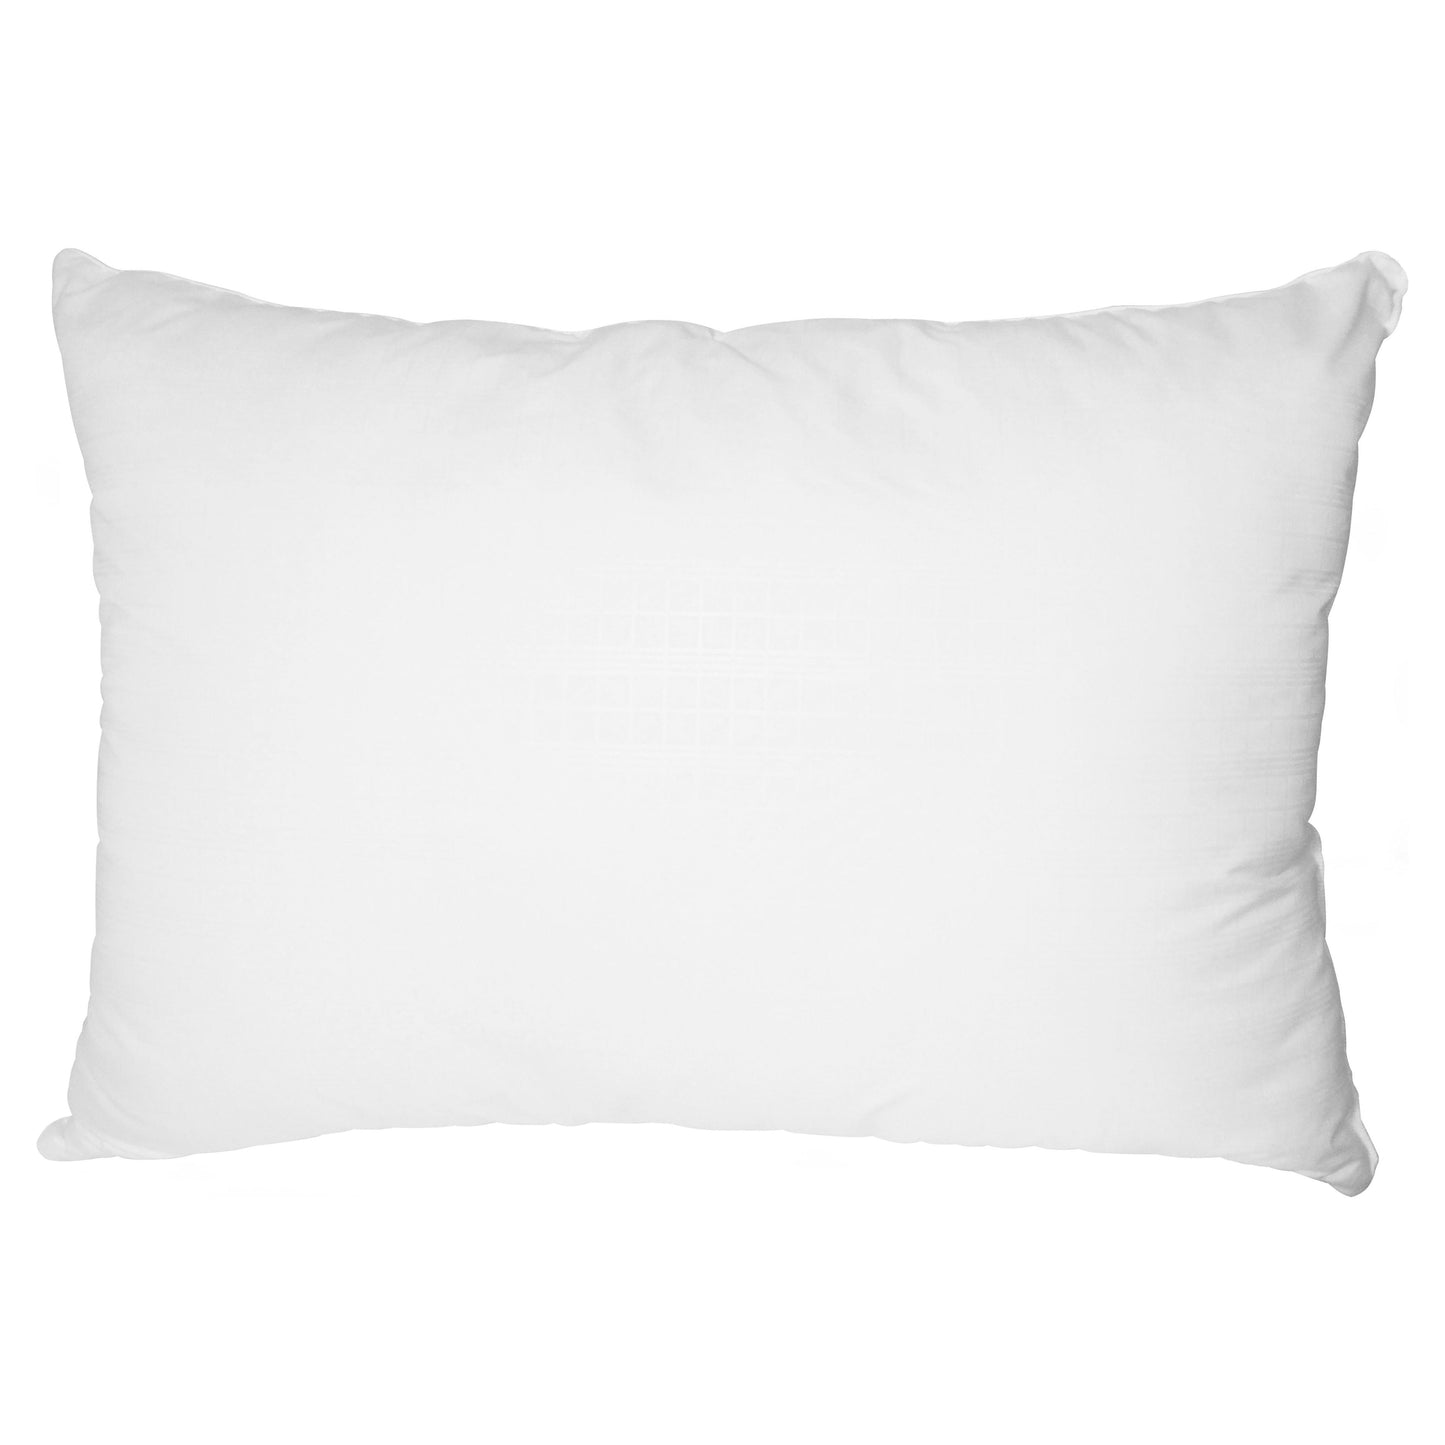 (2 Pack)  Comfort Complete Bed Pillow, Standard/Queen